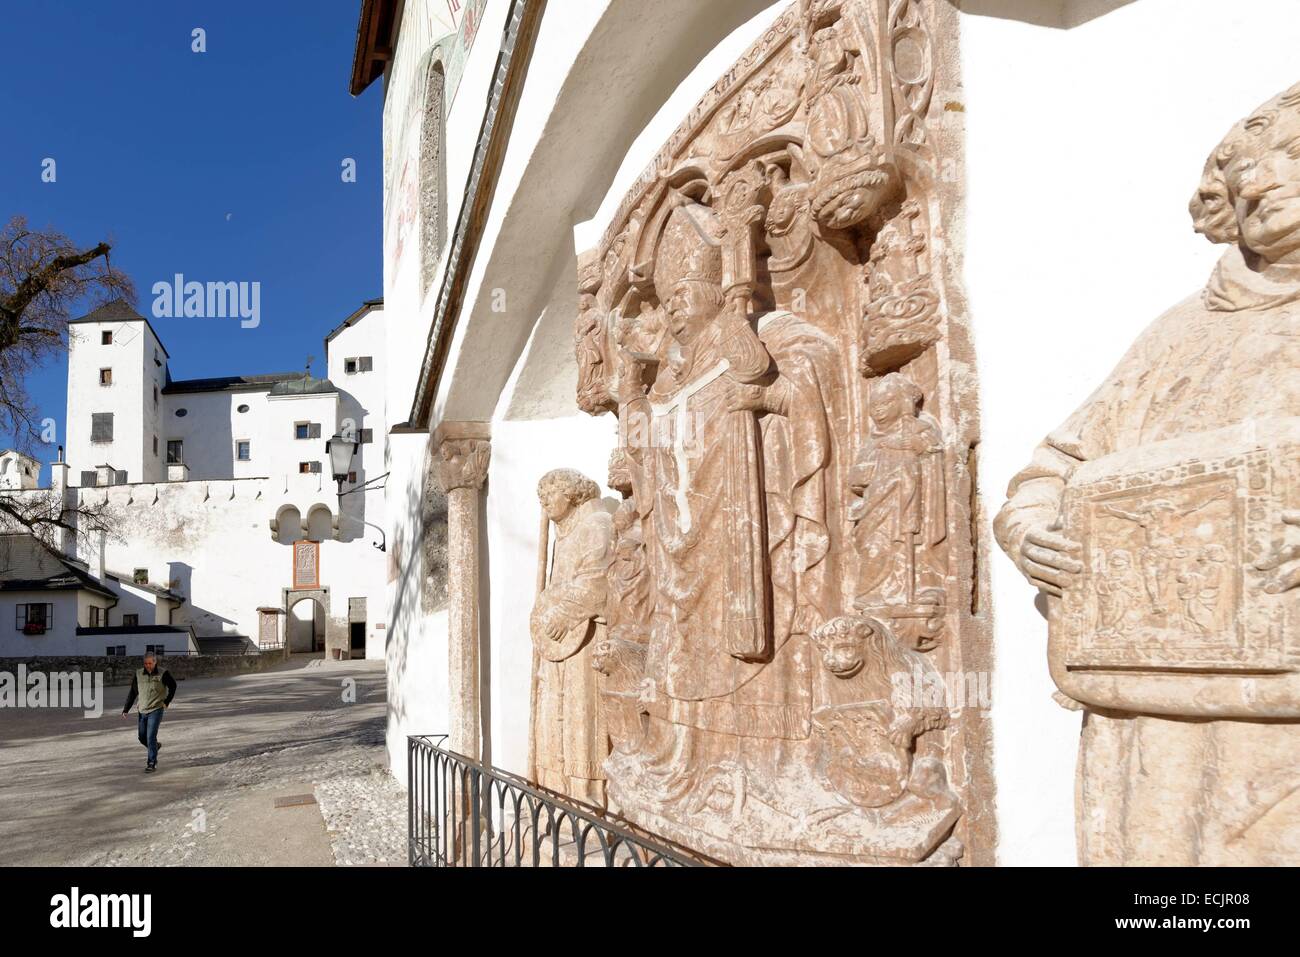 Autriche, Salzbourg, le centre historique classé au Patrimoine Mondial de l'UNESCO, l'église St Georg et intérieur carré du château de Hohensalzburg Banque D'Images